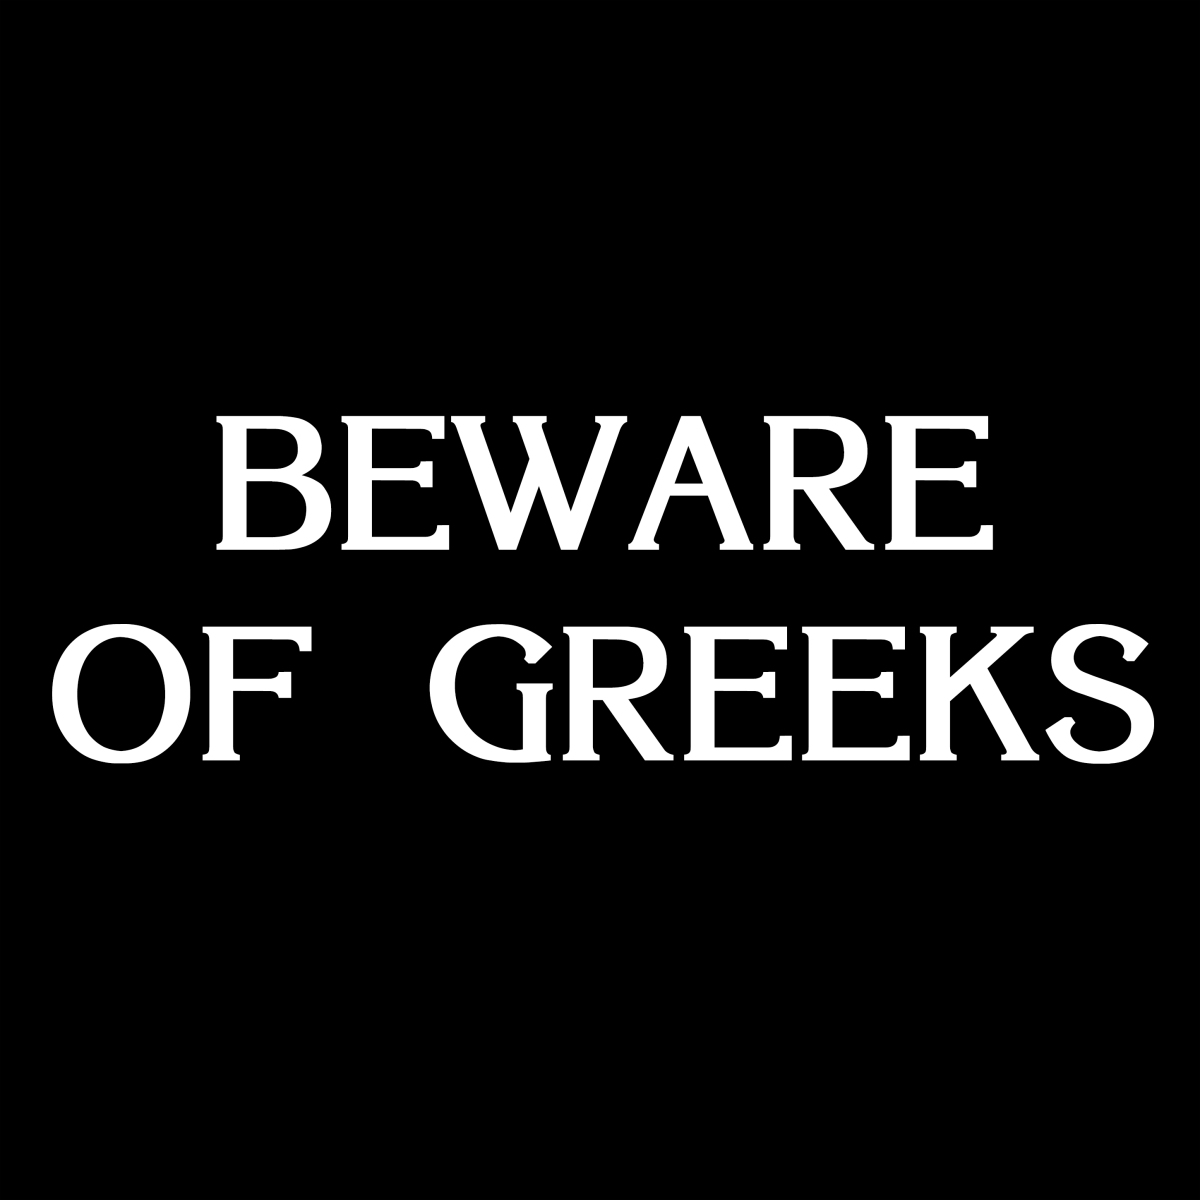 Beware of Greeks